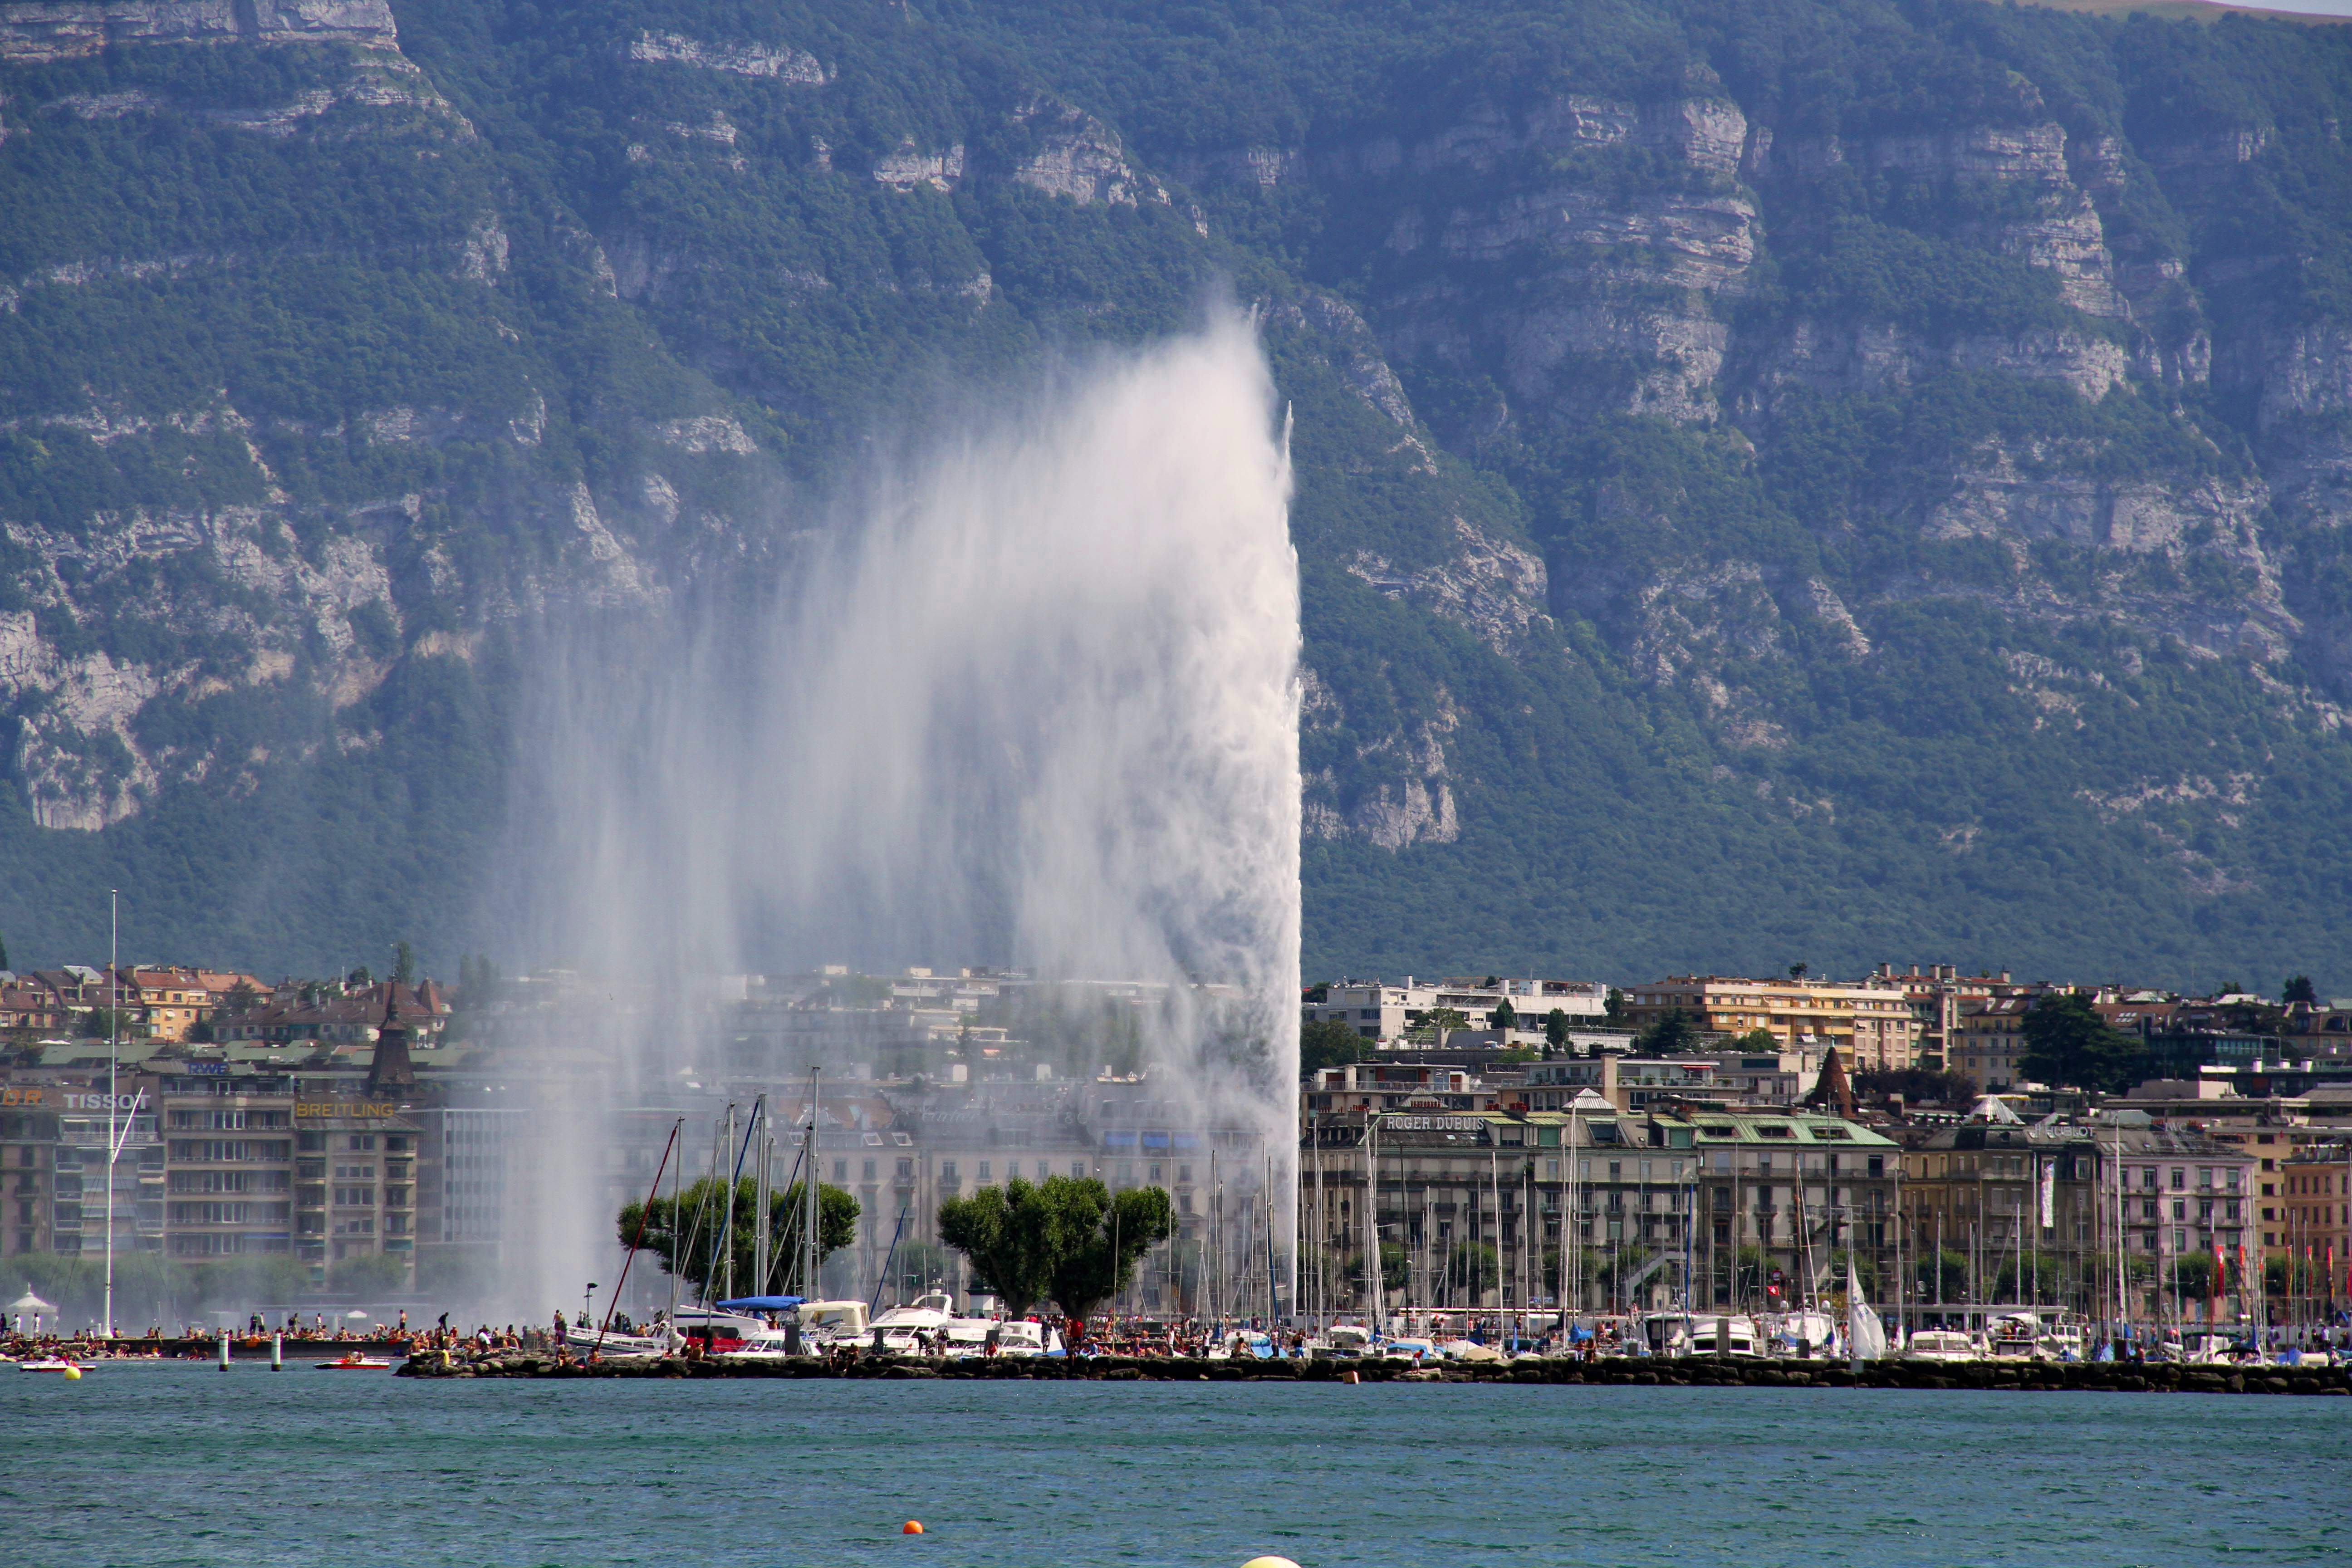 Đài phun nước Jet d'Eau - Jet d'Eau Fountain - Geneva - Thụy Sỹ